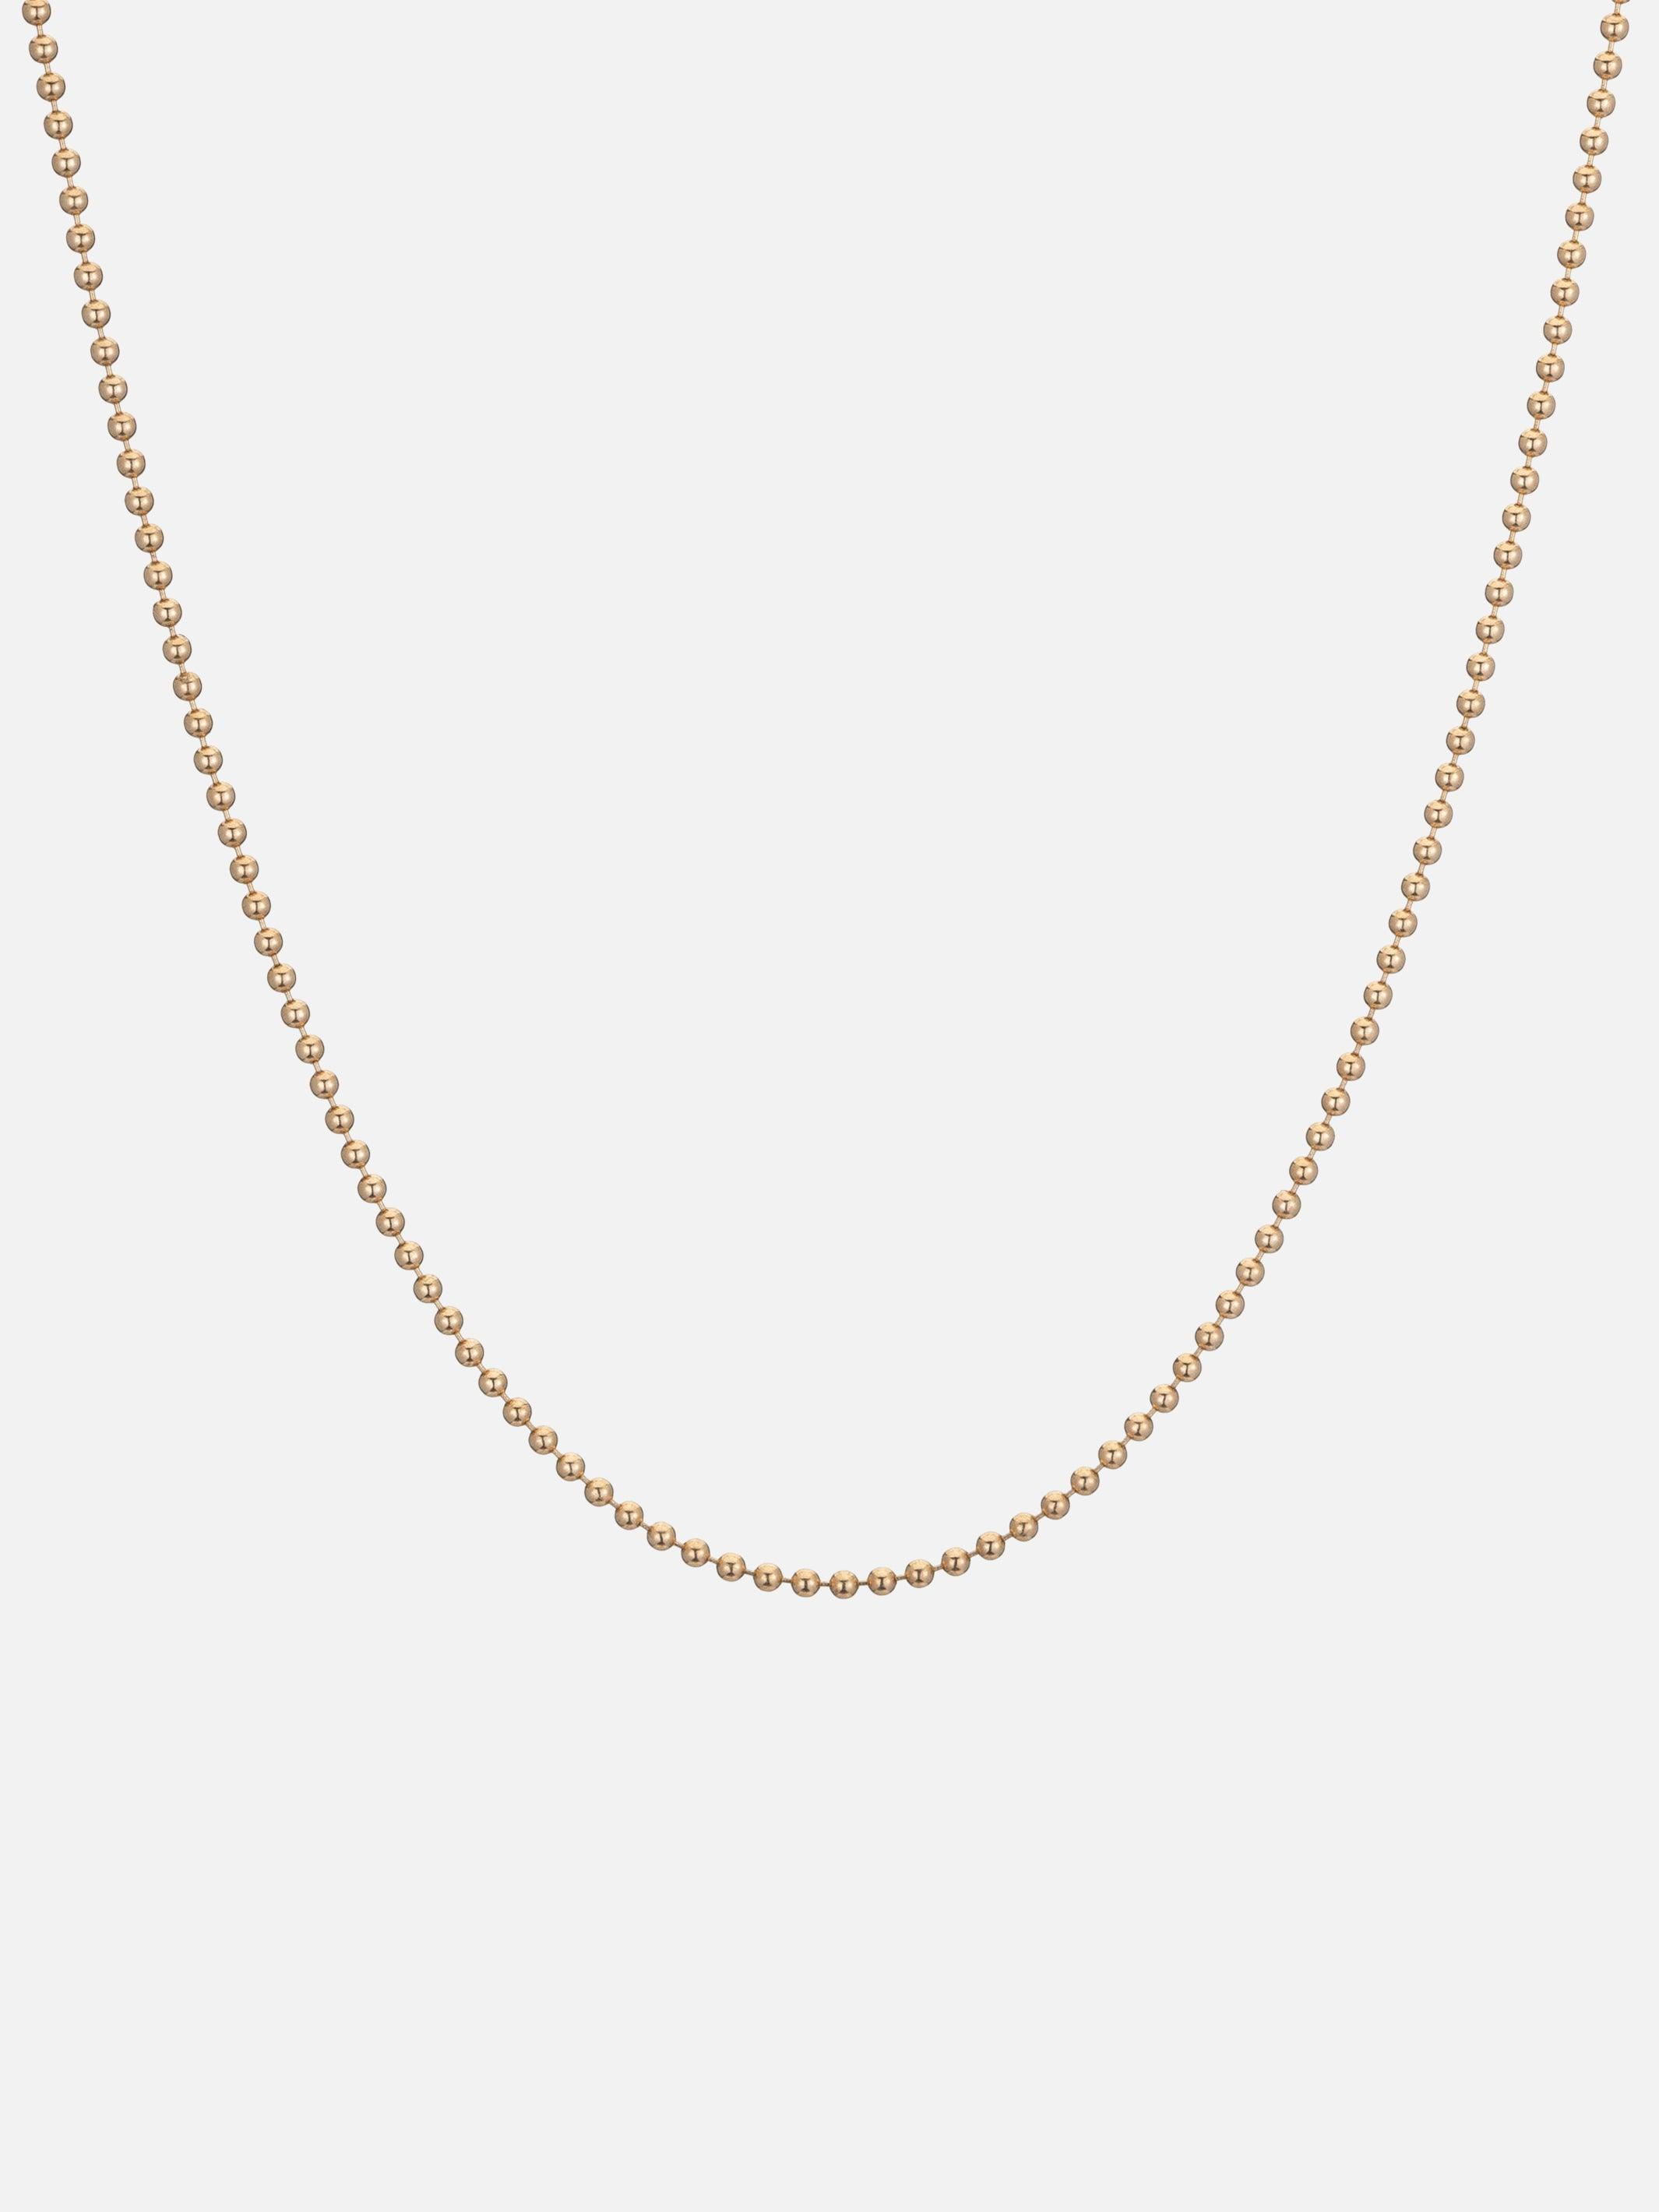 1.5mm Bead Chain - Ariel Gordon Jewelry - At Present